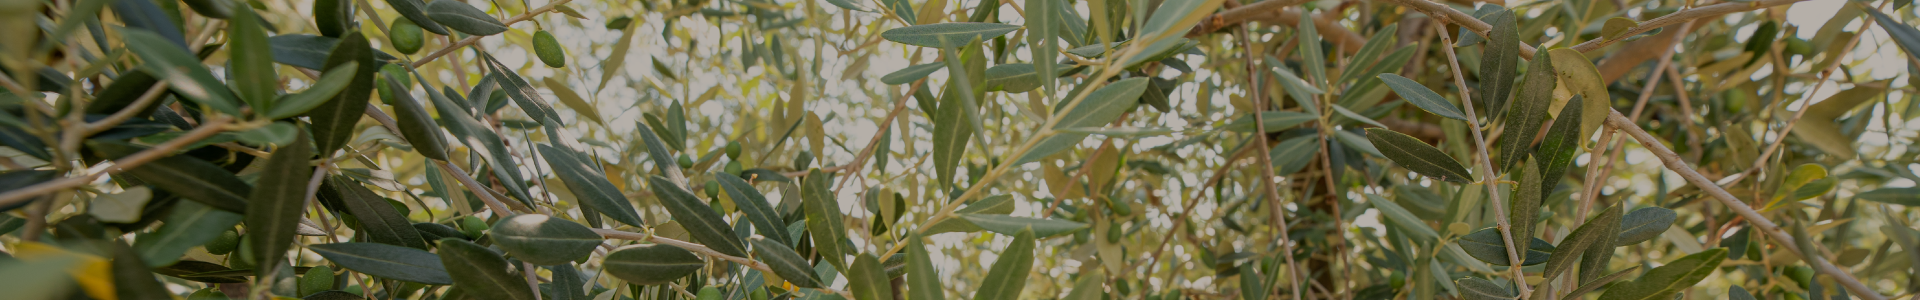 Naturkosmetik auf der Basis von Olivenöl